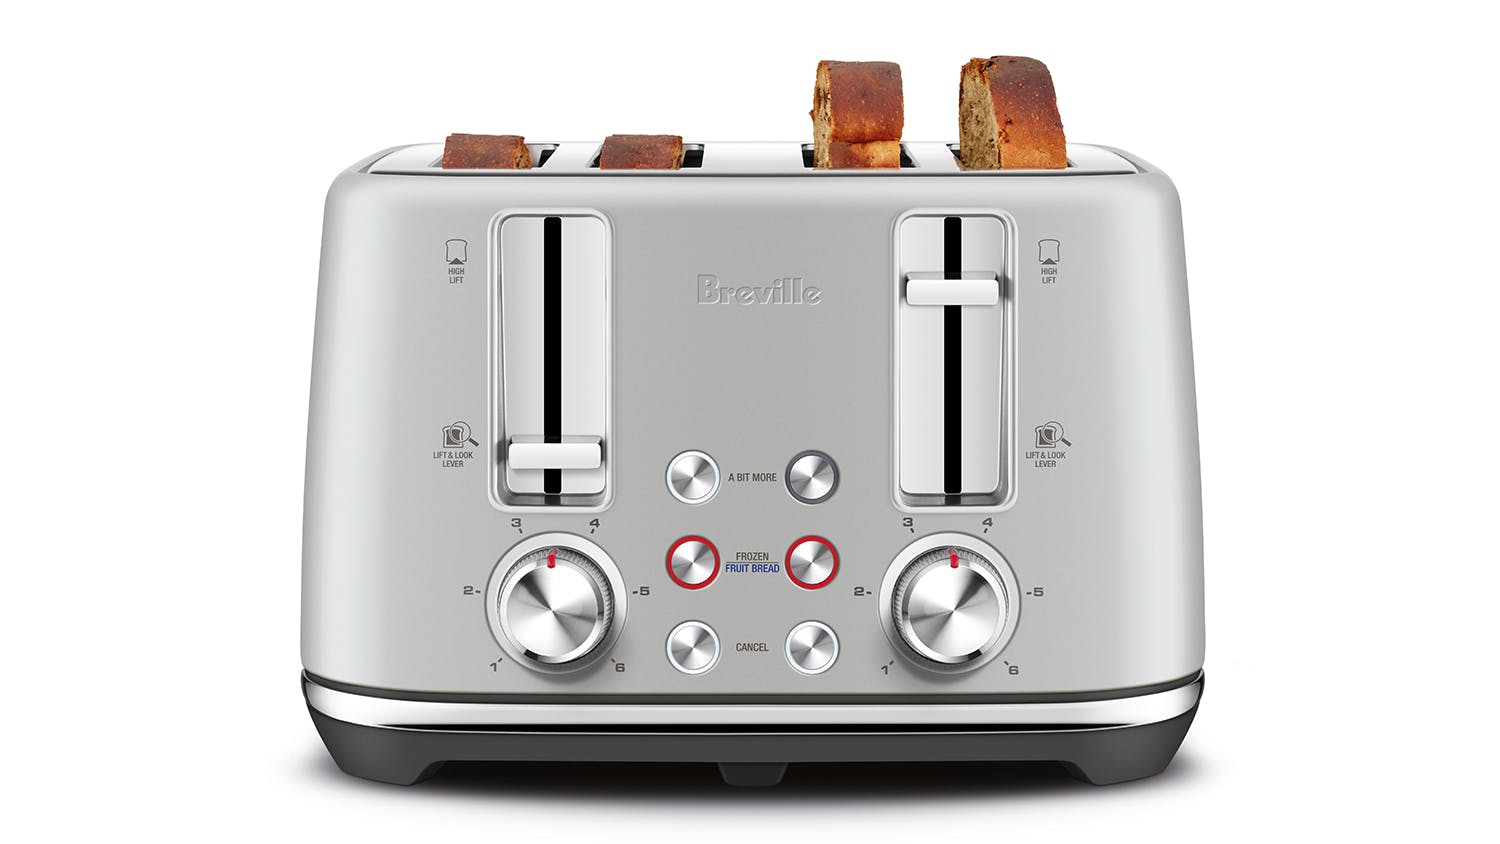 Breville "the ToastSet" 4 Slice Toaster - Light Grey (LTA842LGY)